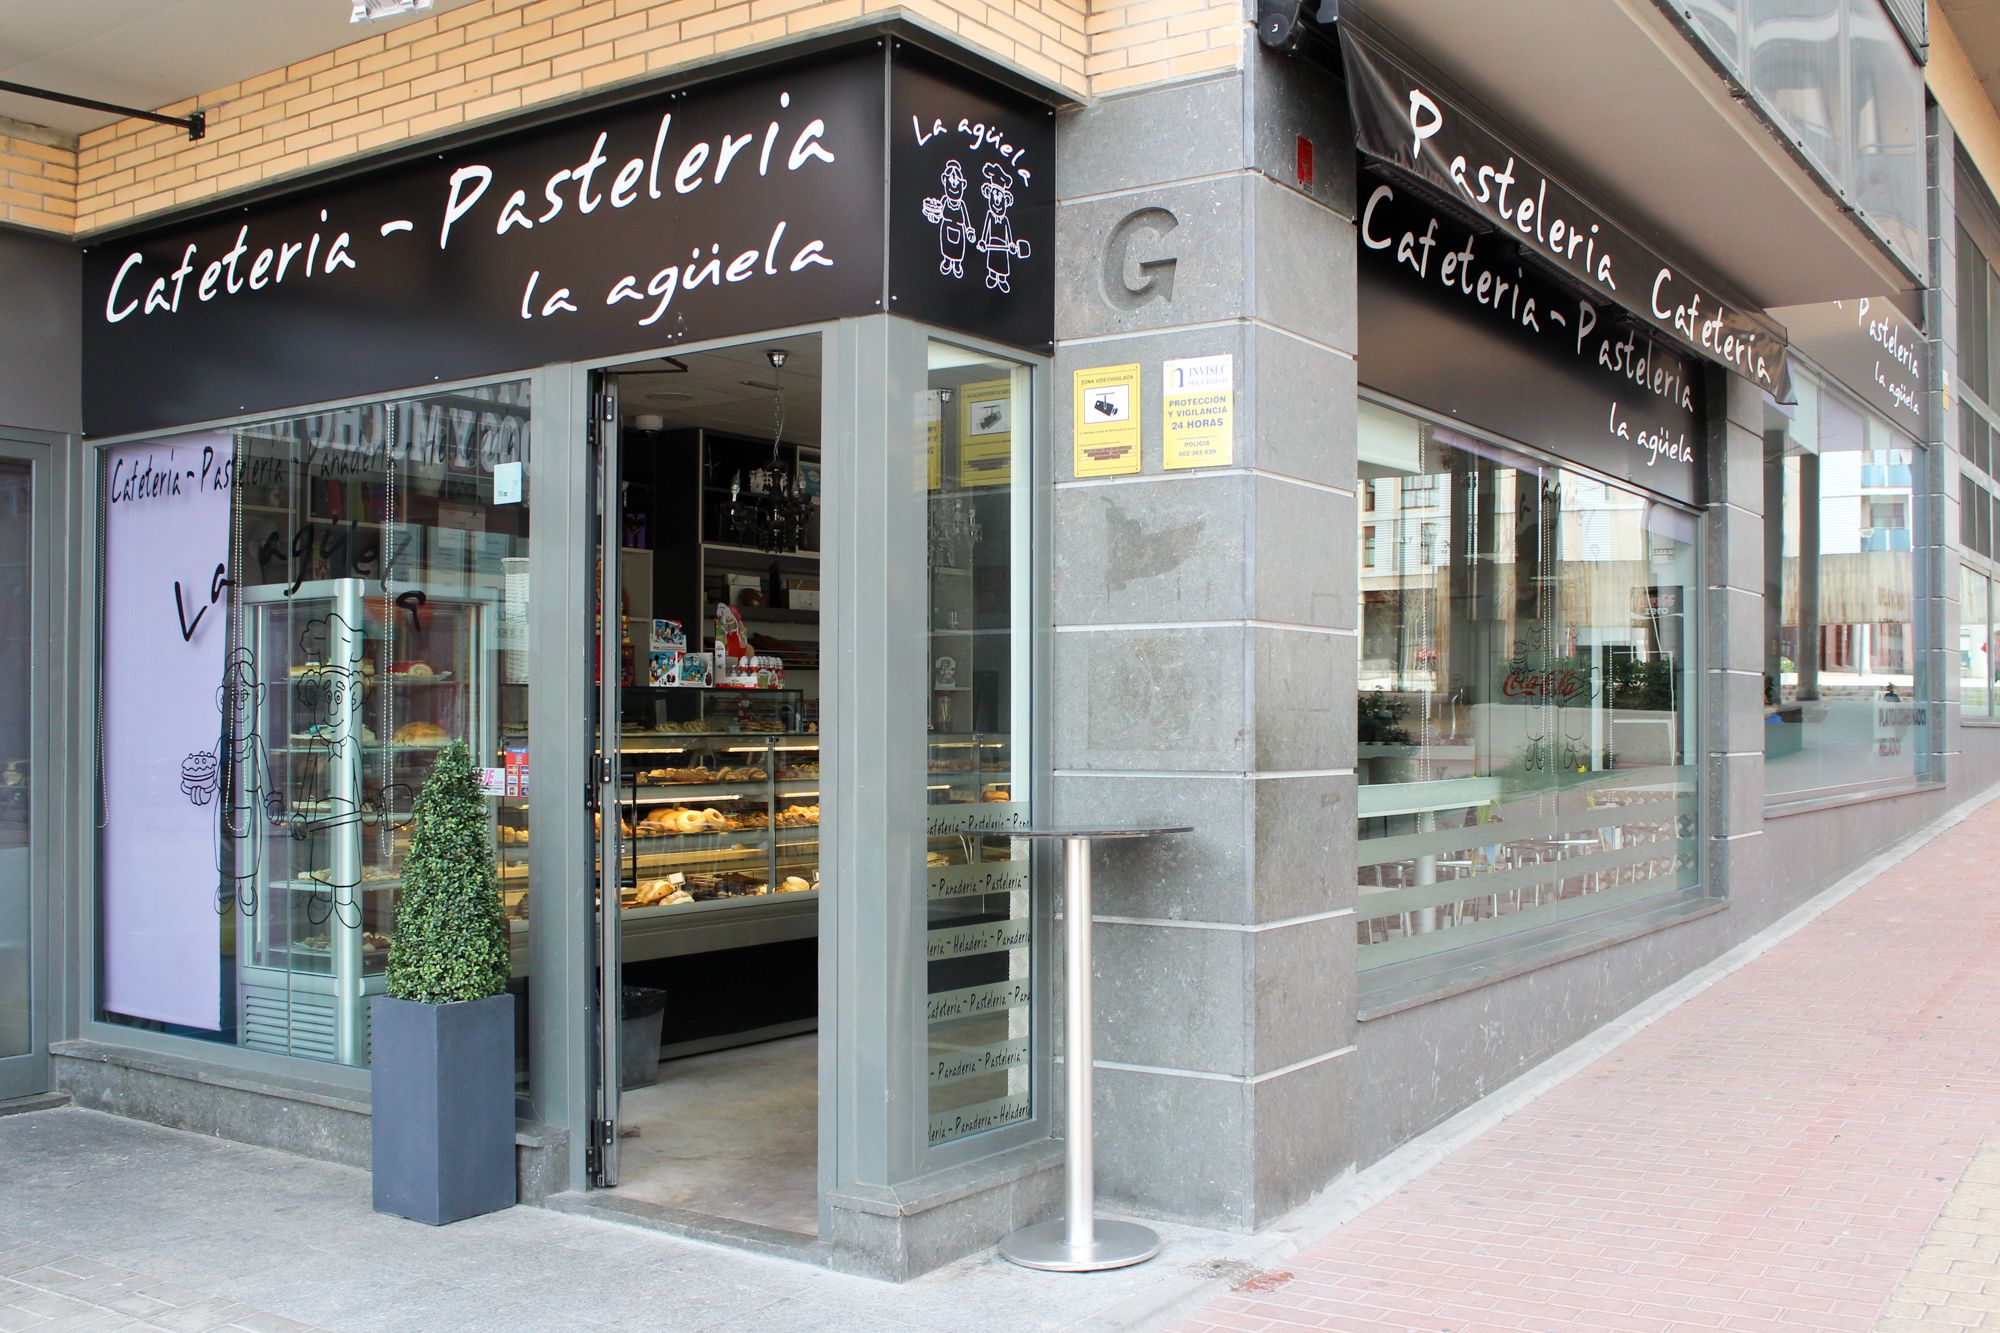 Foto 9 de Pastelerías en Getafe | Cafetería Pastelería La Agüela